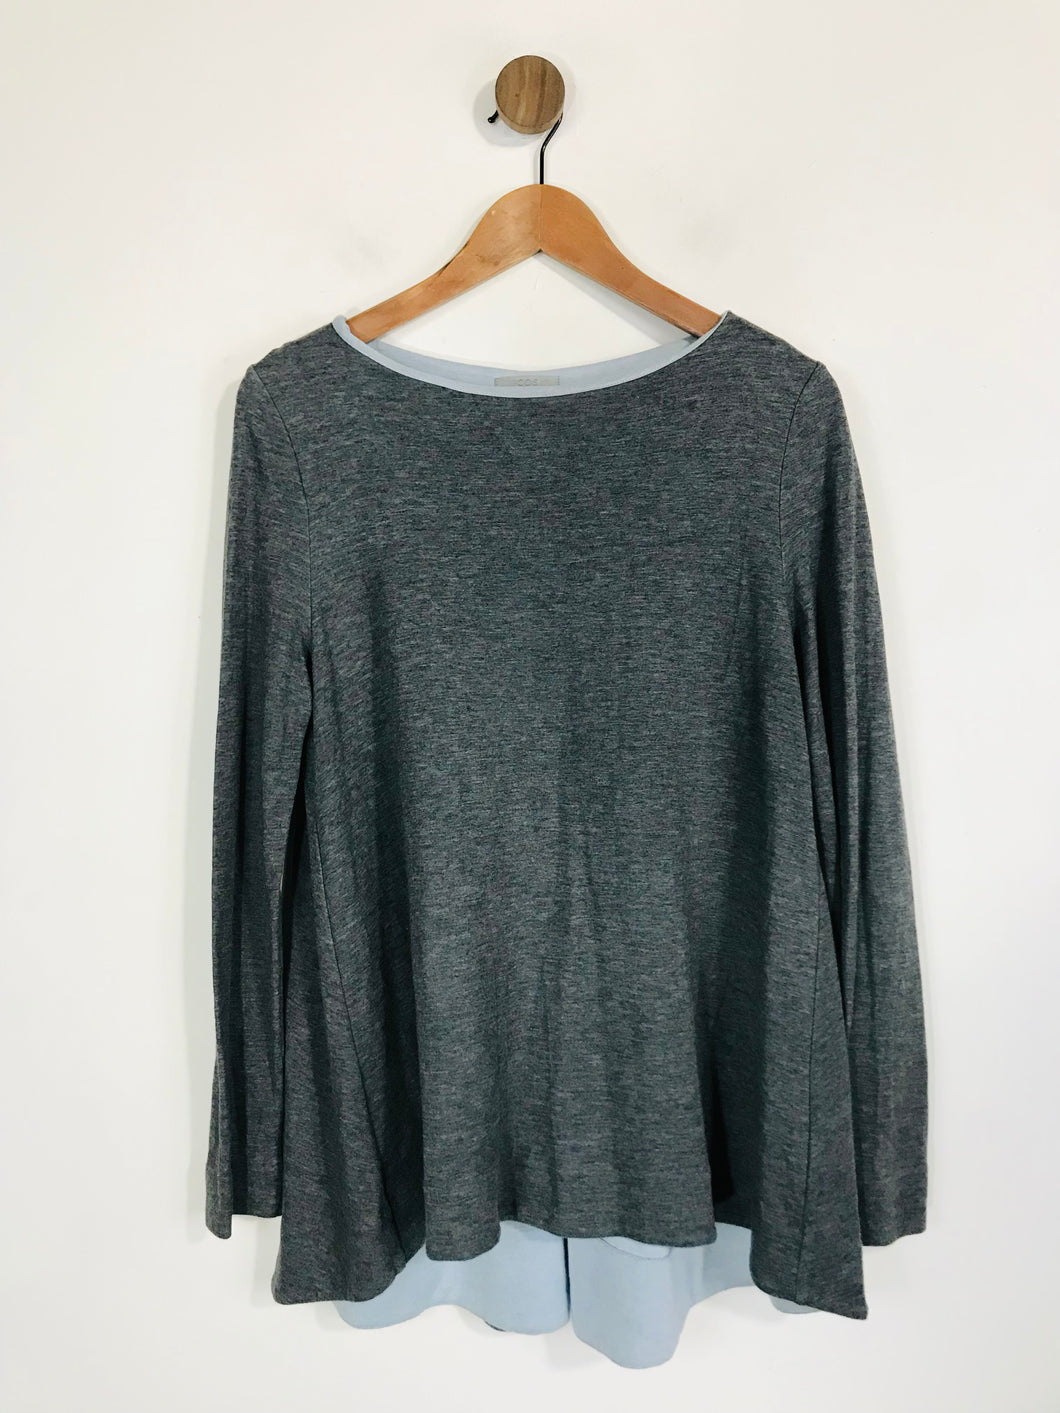 COS Women's Long Sleeve T-Shirt | M UK10-12 | Grey